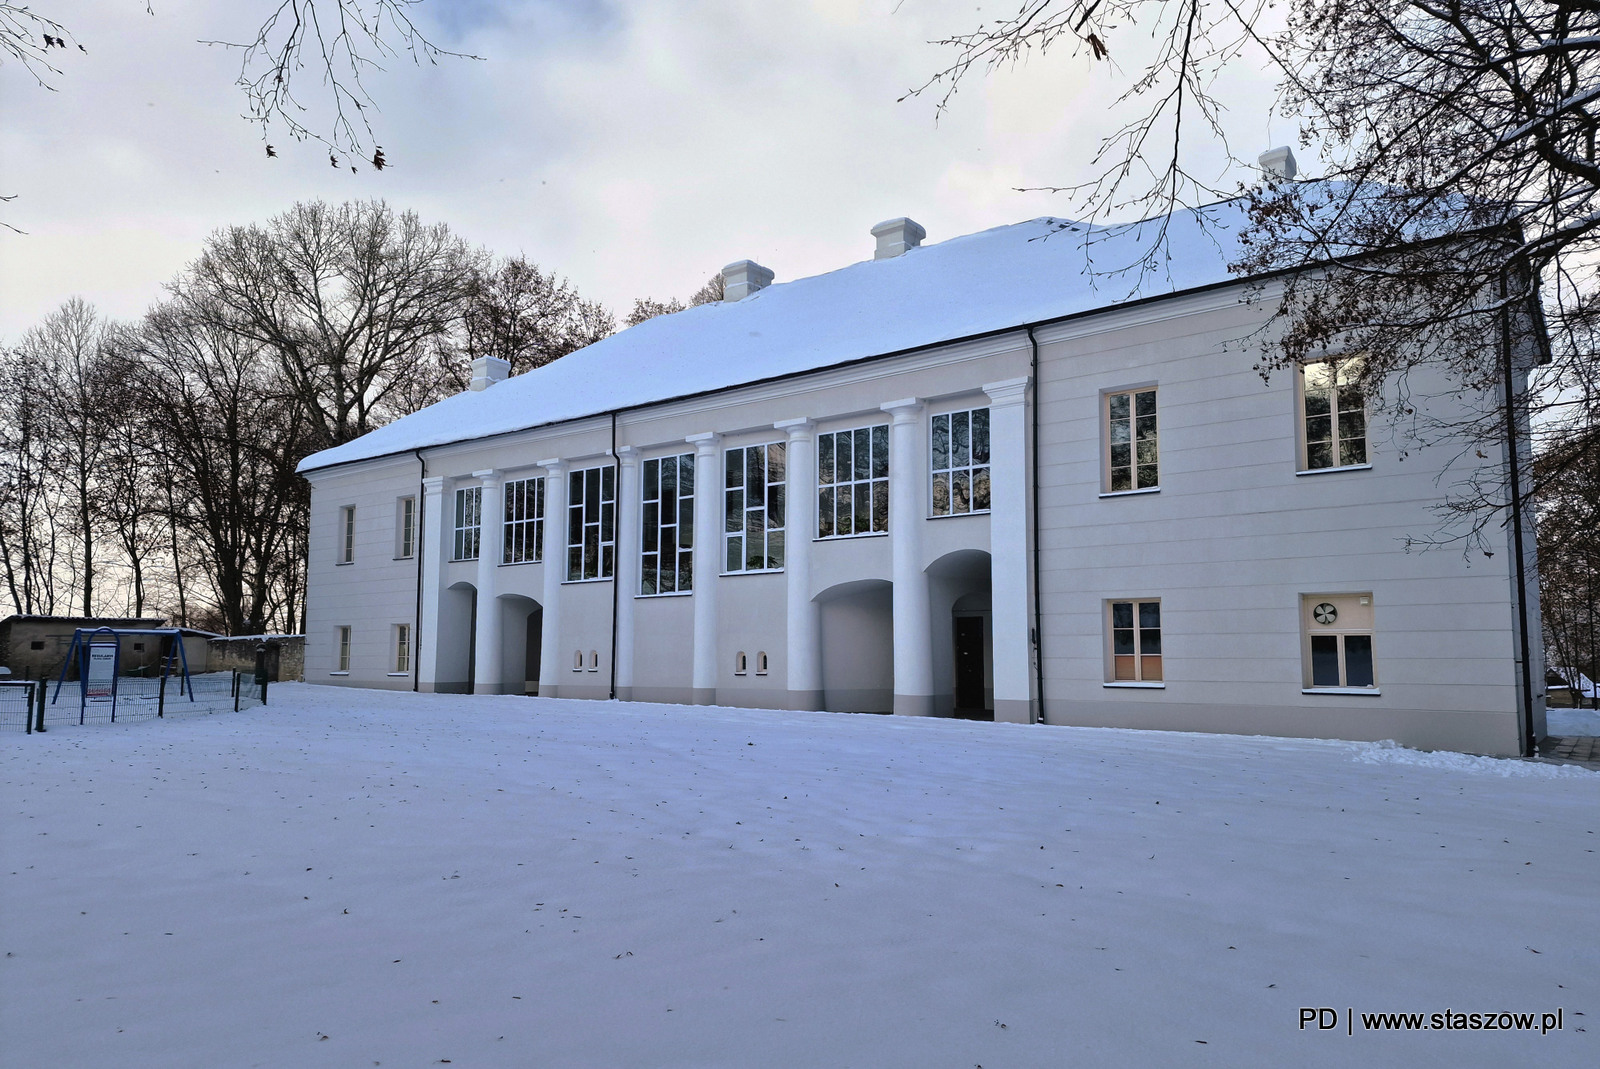 Malownicza zimowa aura w Staszowie